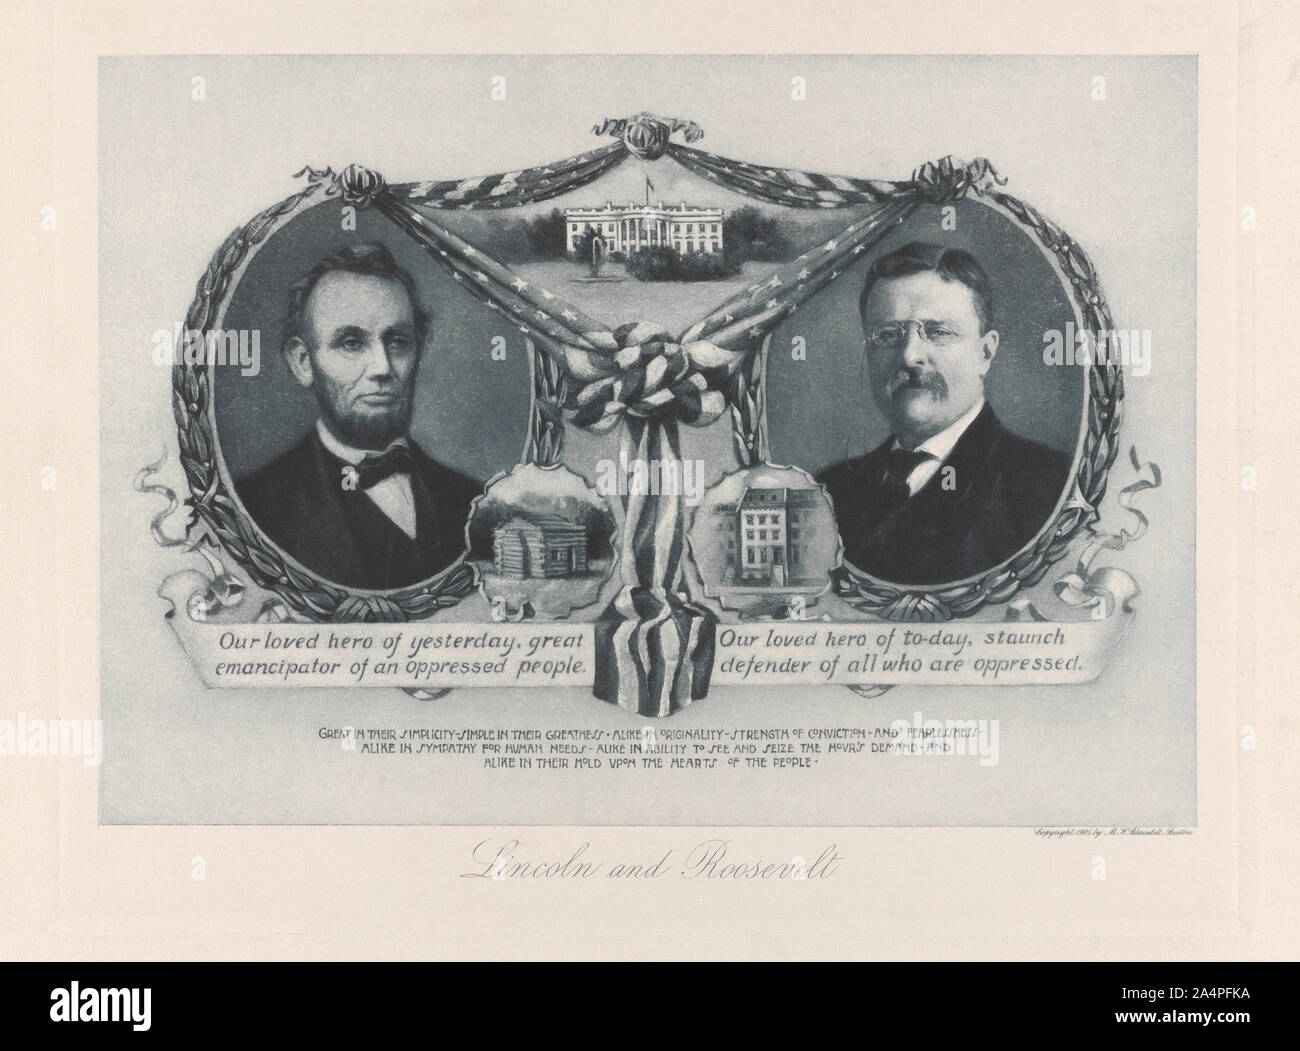 Abraham Lincoln und Theodore Roosevelt Memorial Porträts, Illustration von M.H. Blaisdell, 1905 veröffentlicht. Stockfoto